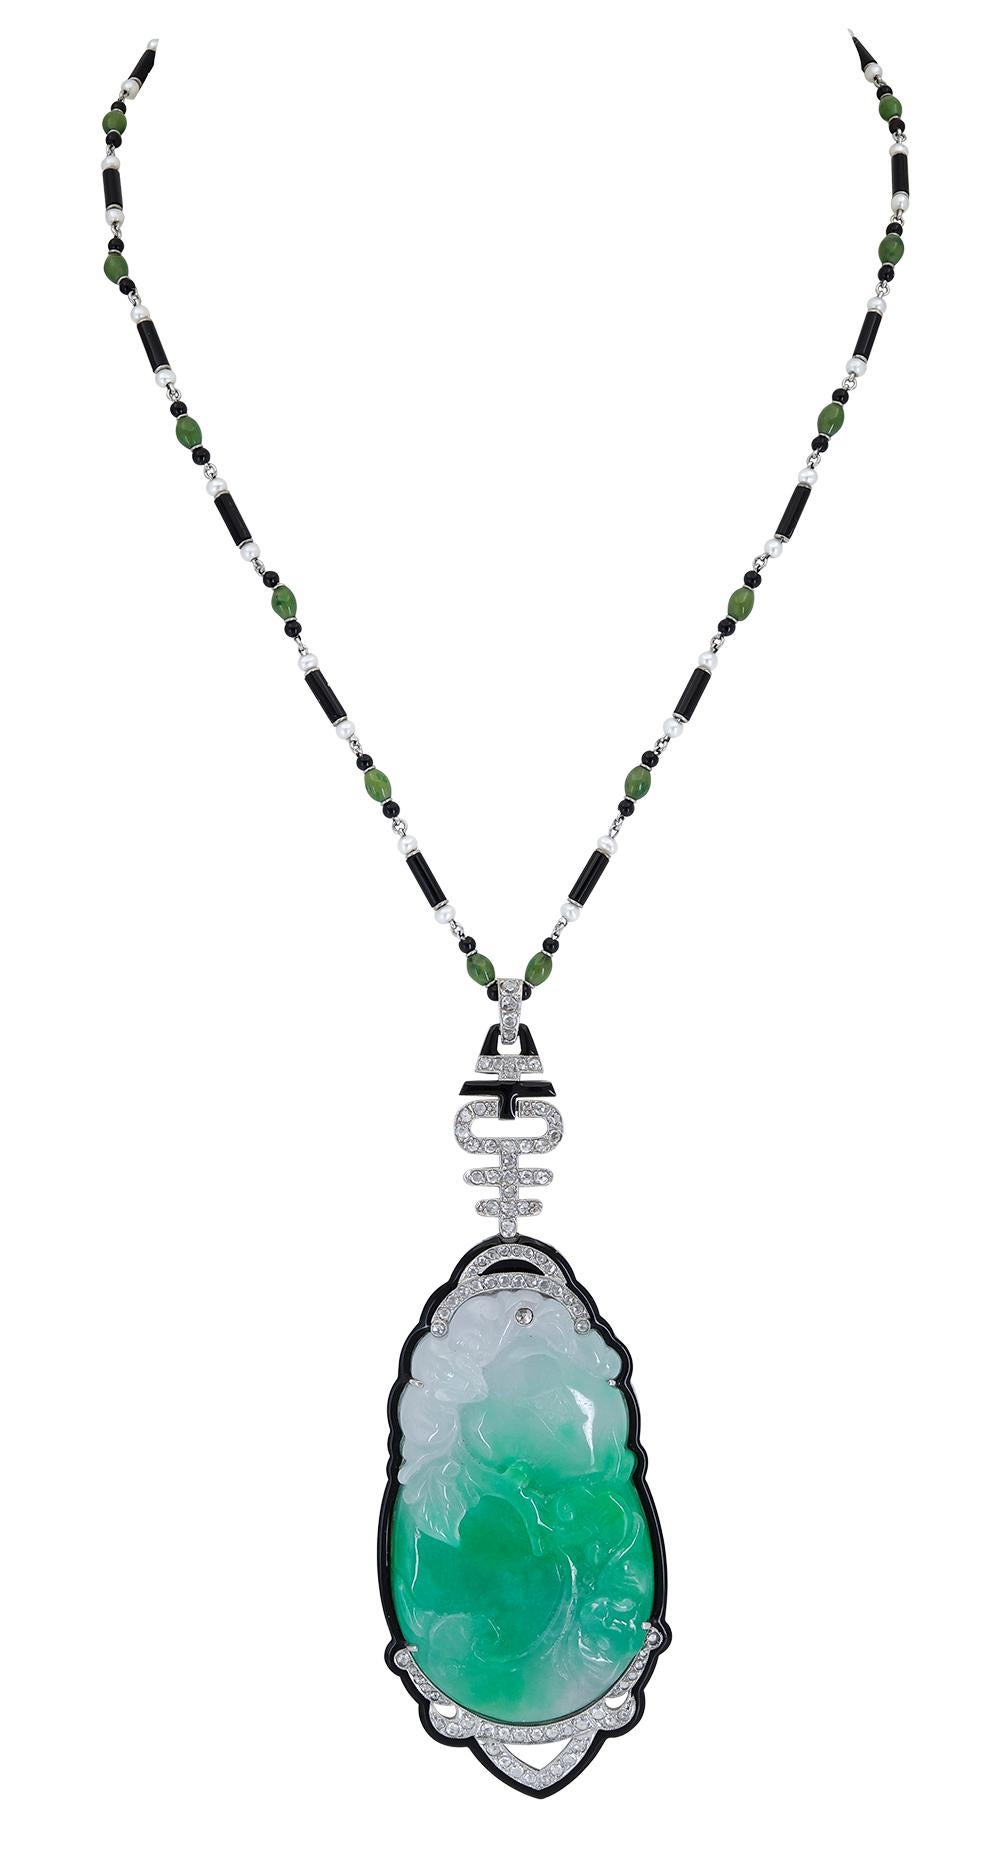 Handgeschnitzter Jade-Anhänger in einer Onyx- und Diamantfassung. Aufgehängt an einer schönen Kette aus kleinen Perlen, Jade und Onyx. Ein wunderschönes Schmuckstück.

Abmessungen des Anhängers: 4.00 in x 1.375 in
Länge der Kette: 17.75 in
Dicke der